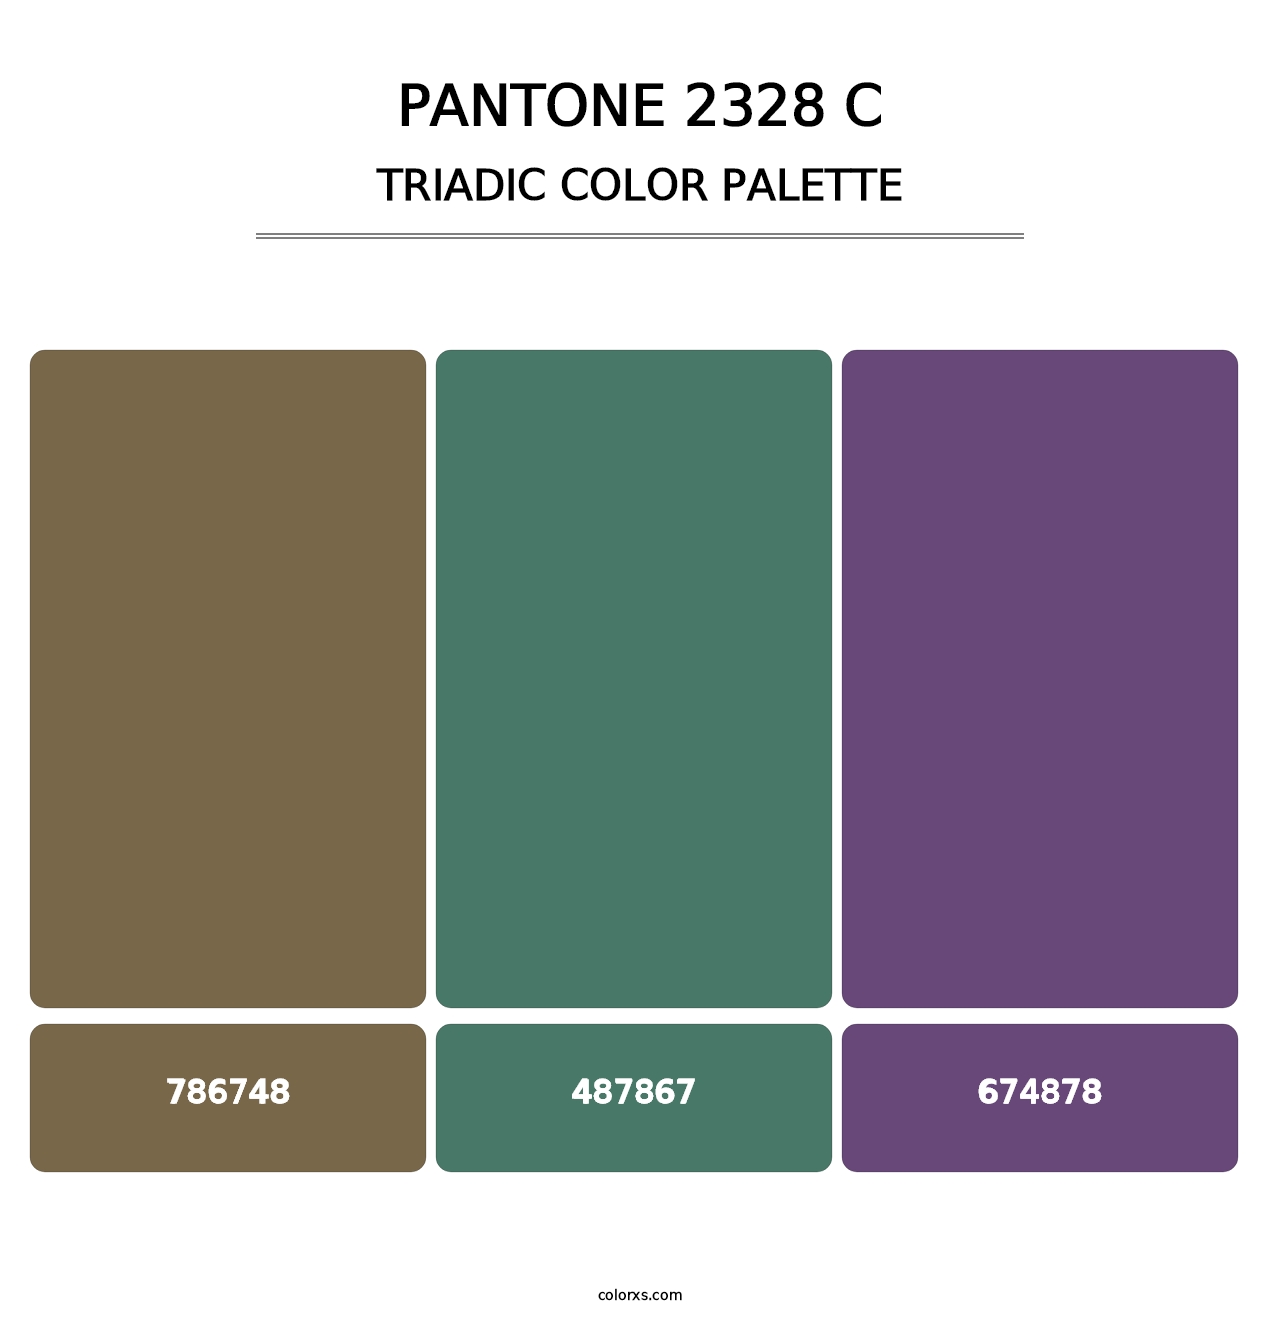 PANTONE 2328 C - Triadic Color Palette